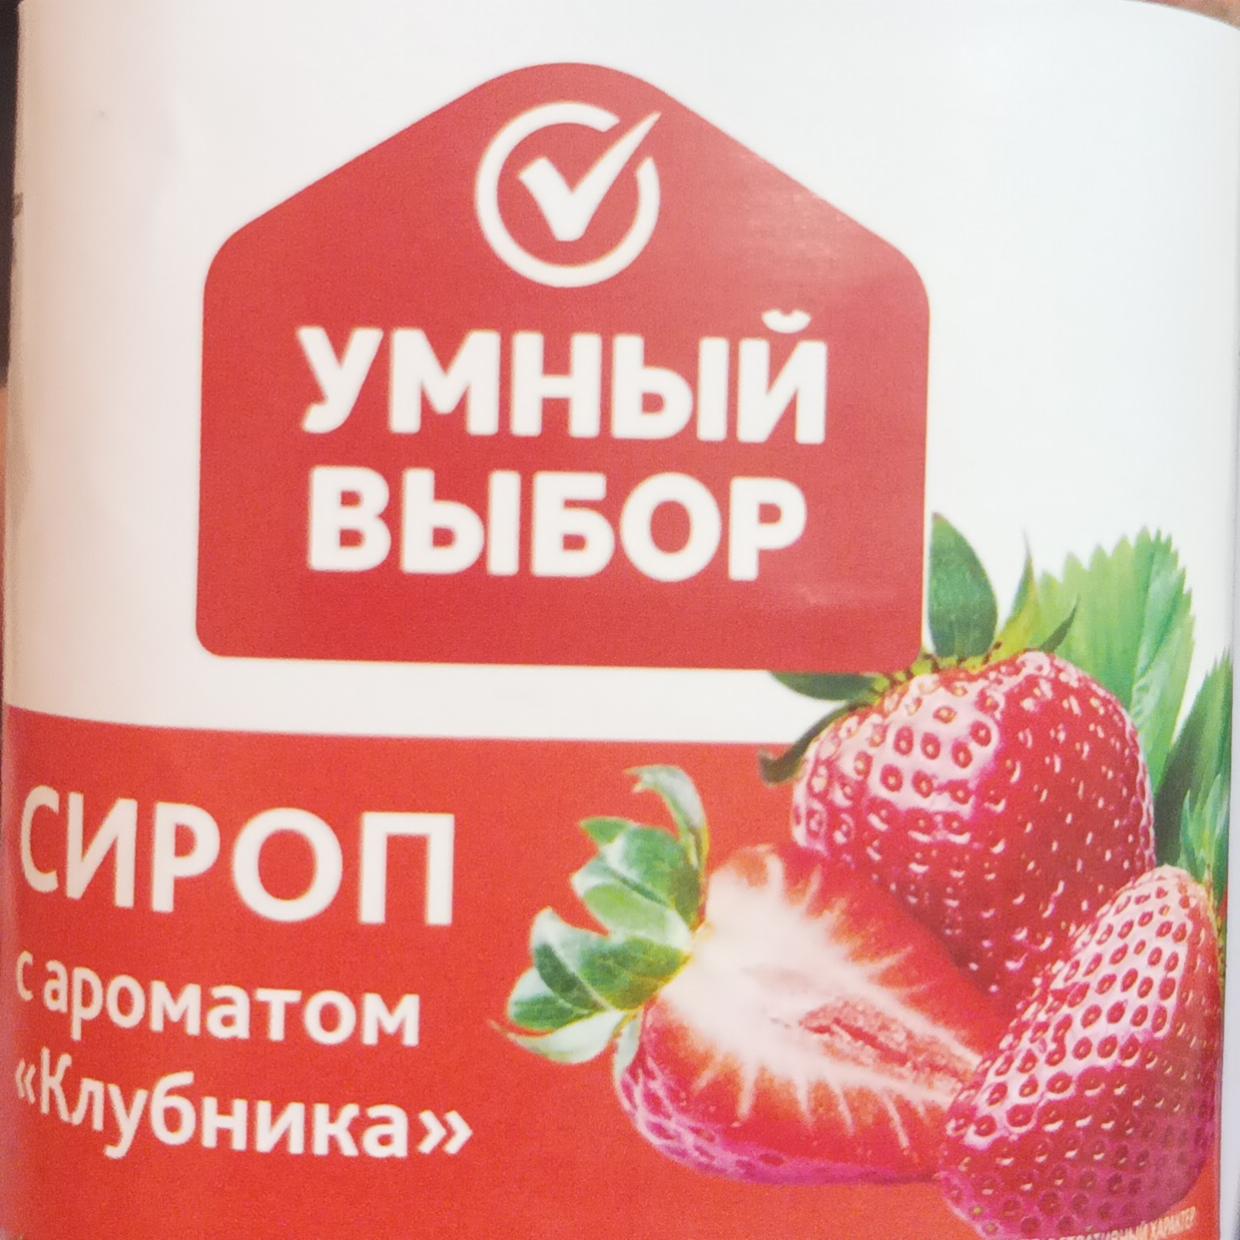 Фото - Сироп с ароматом клубника Умный выбор